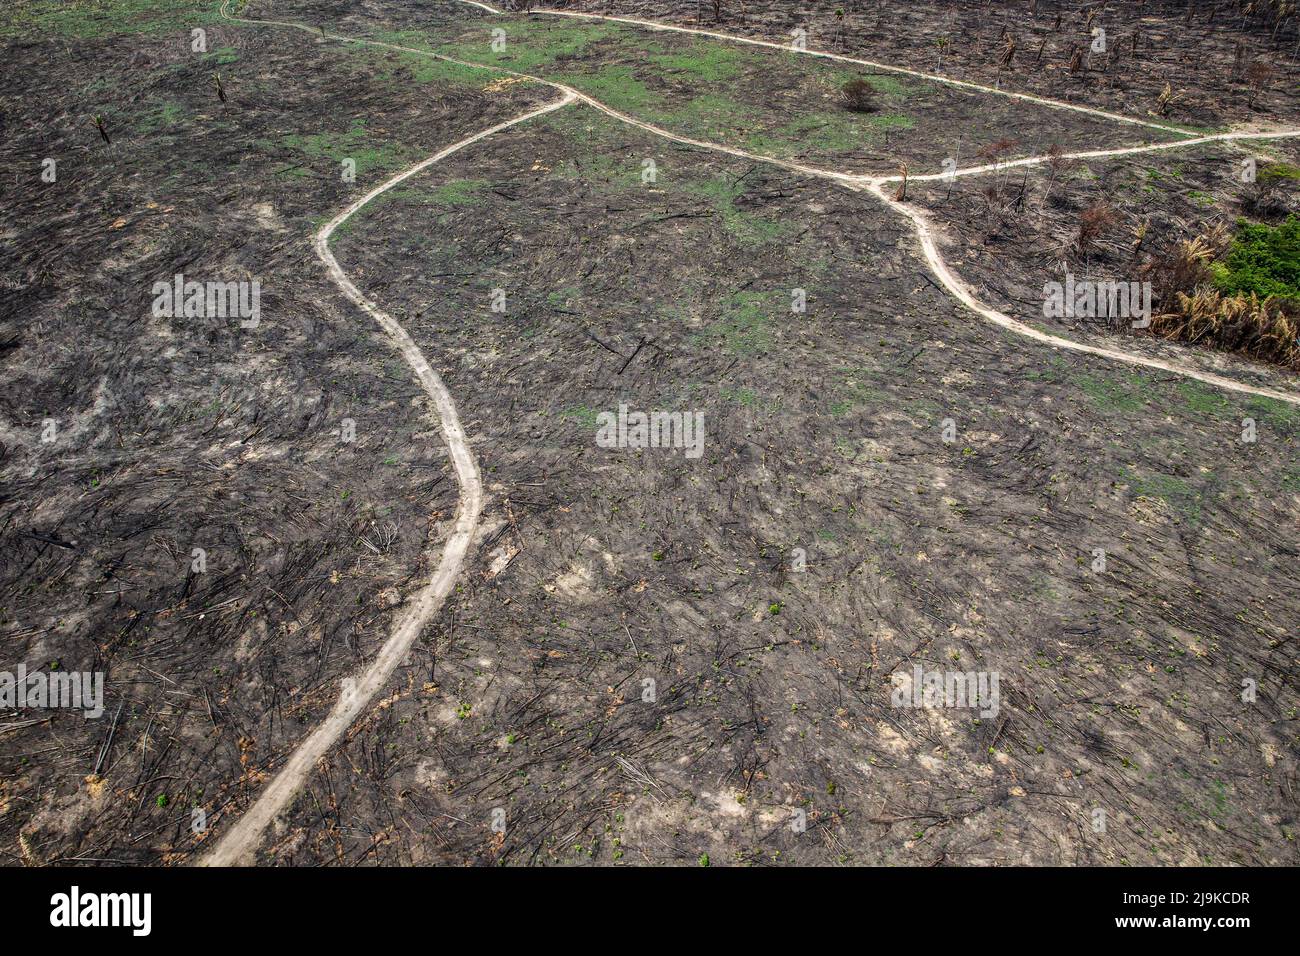 Déforestation de la forêt amazonienne. Morceau de terre brûlé au sol. Environnement, écologie, concepts climatiques. Banque D'Images